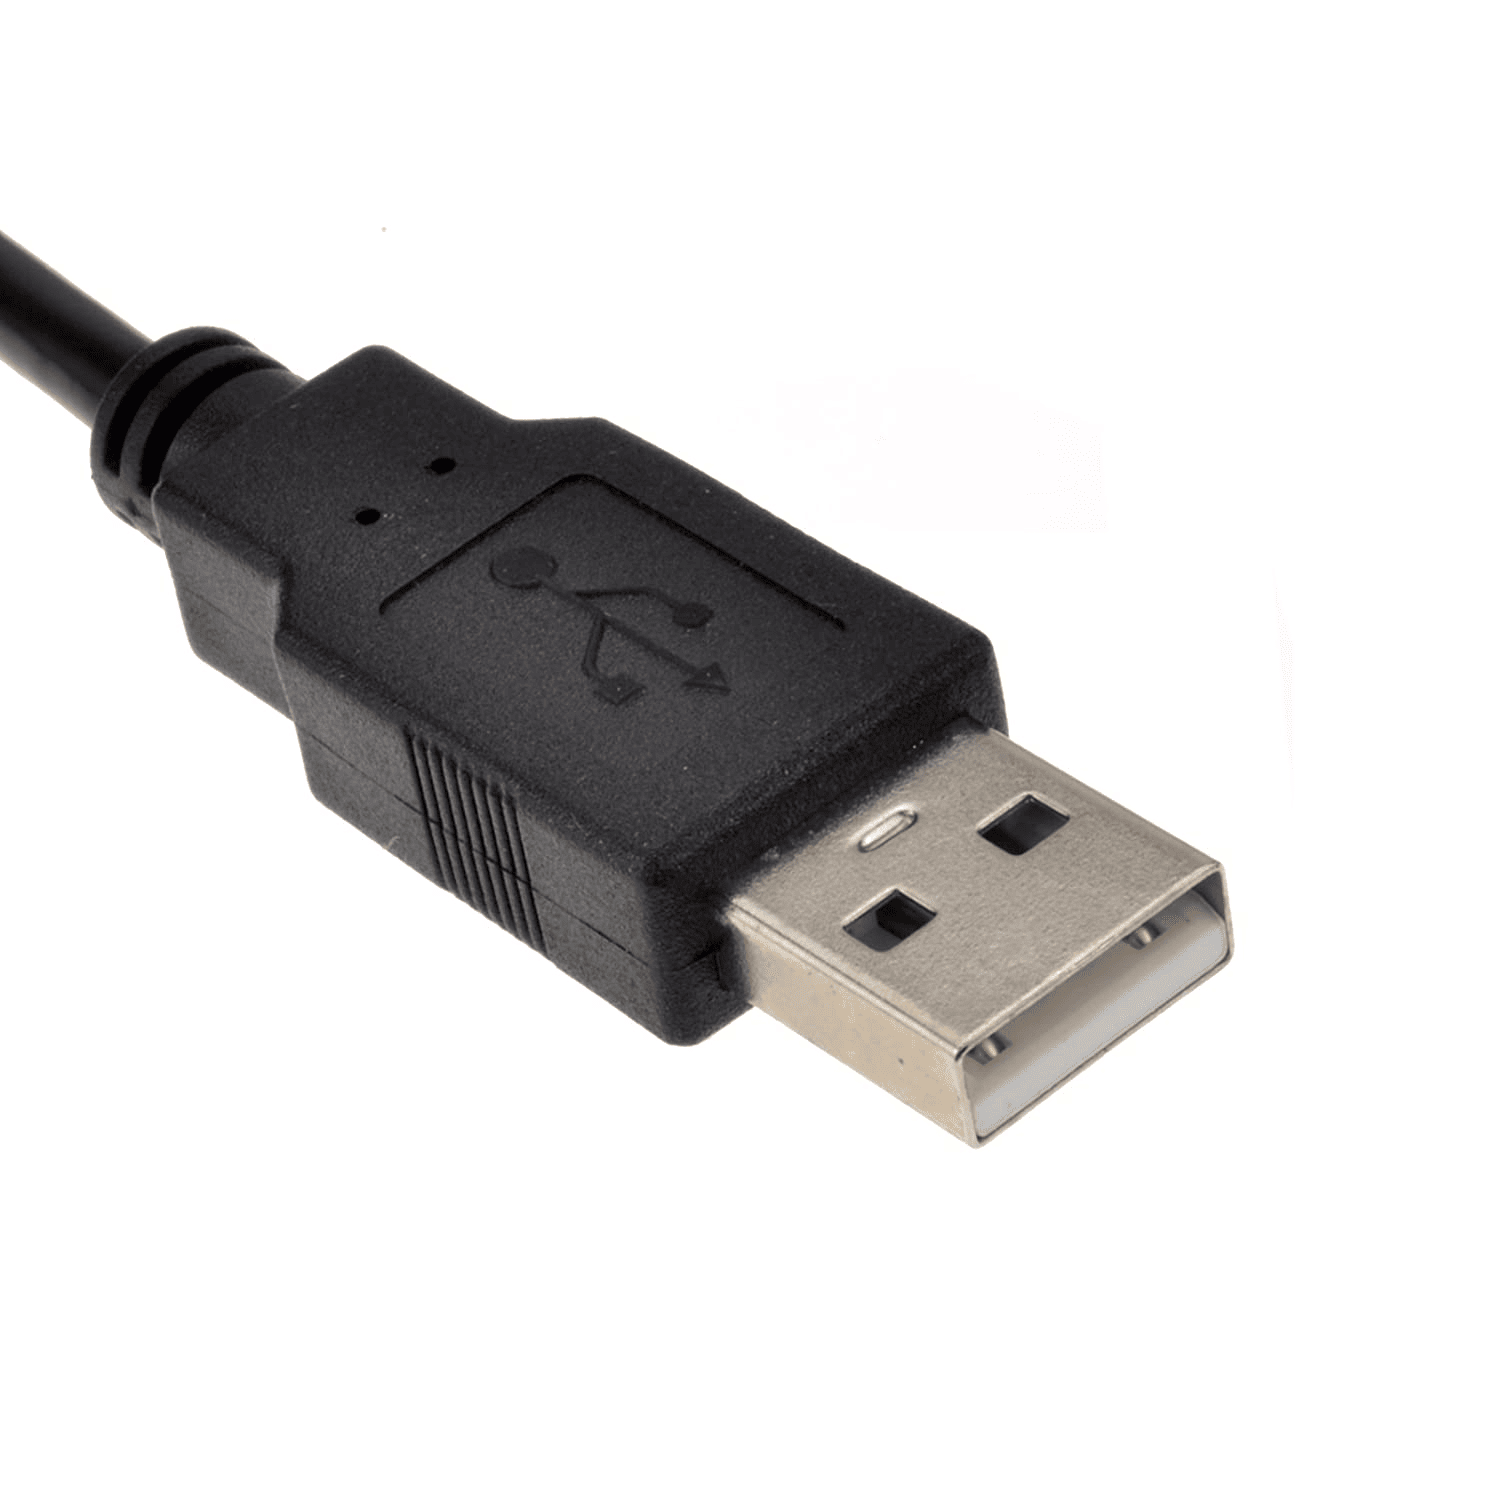 Cable alargador extensor USB 2.0 1.8 M Negro